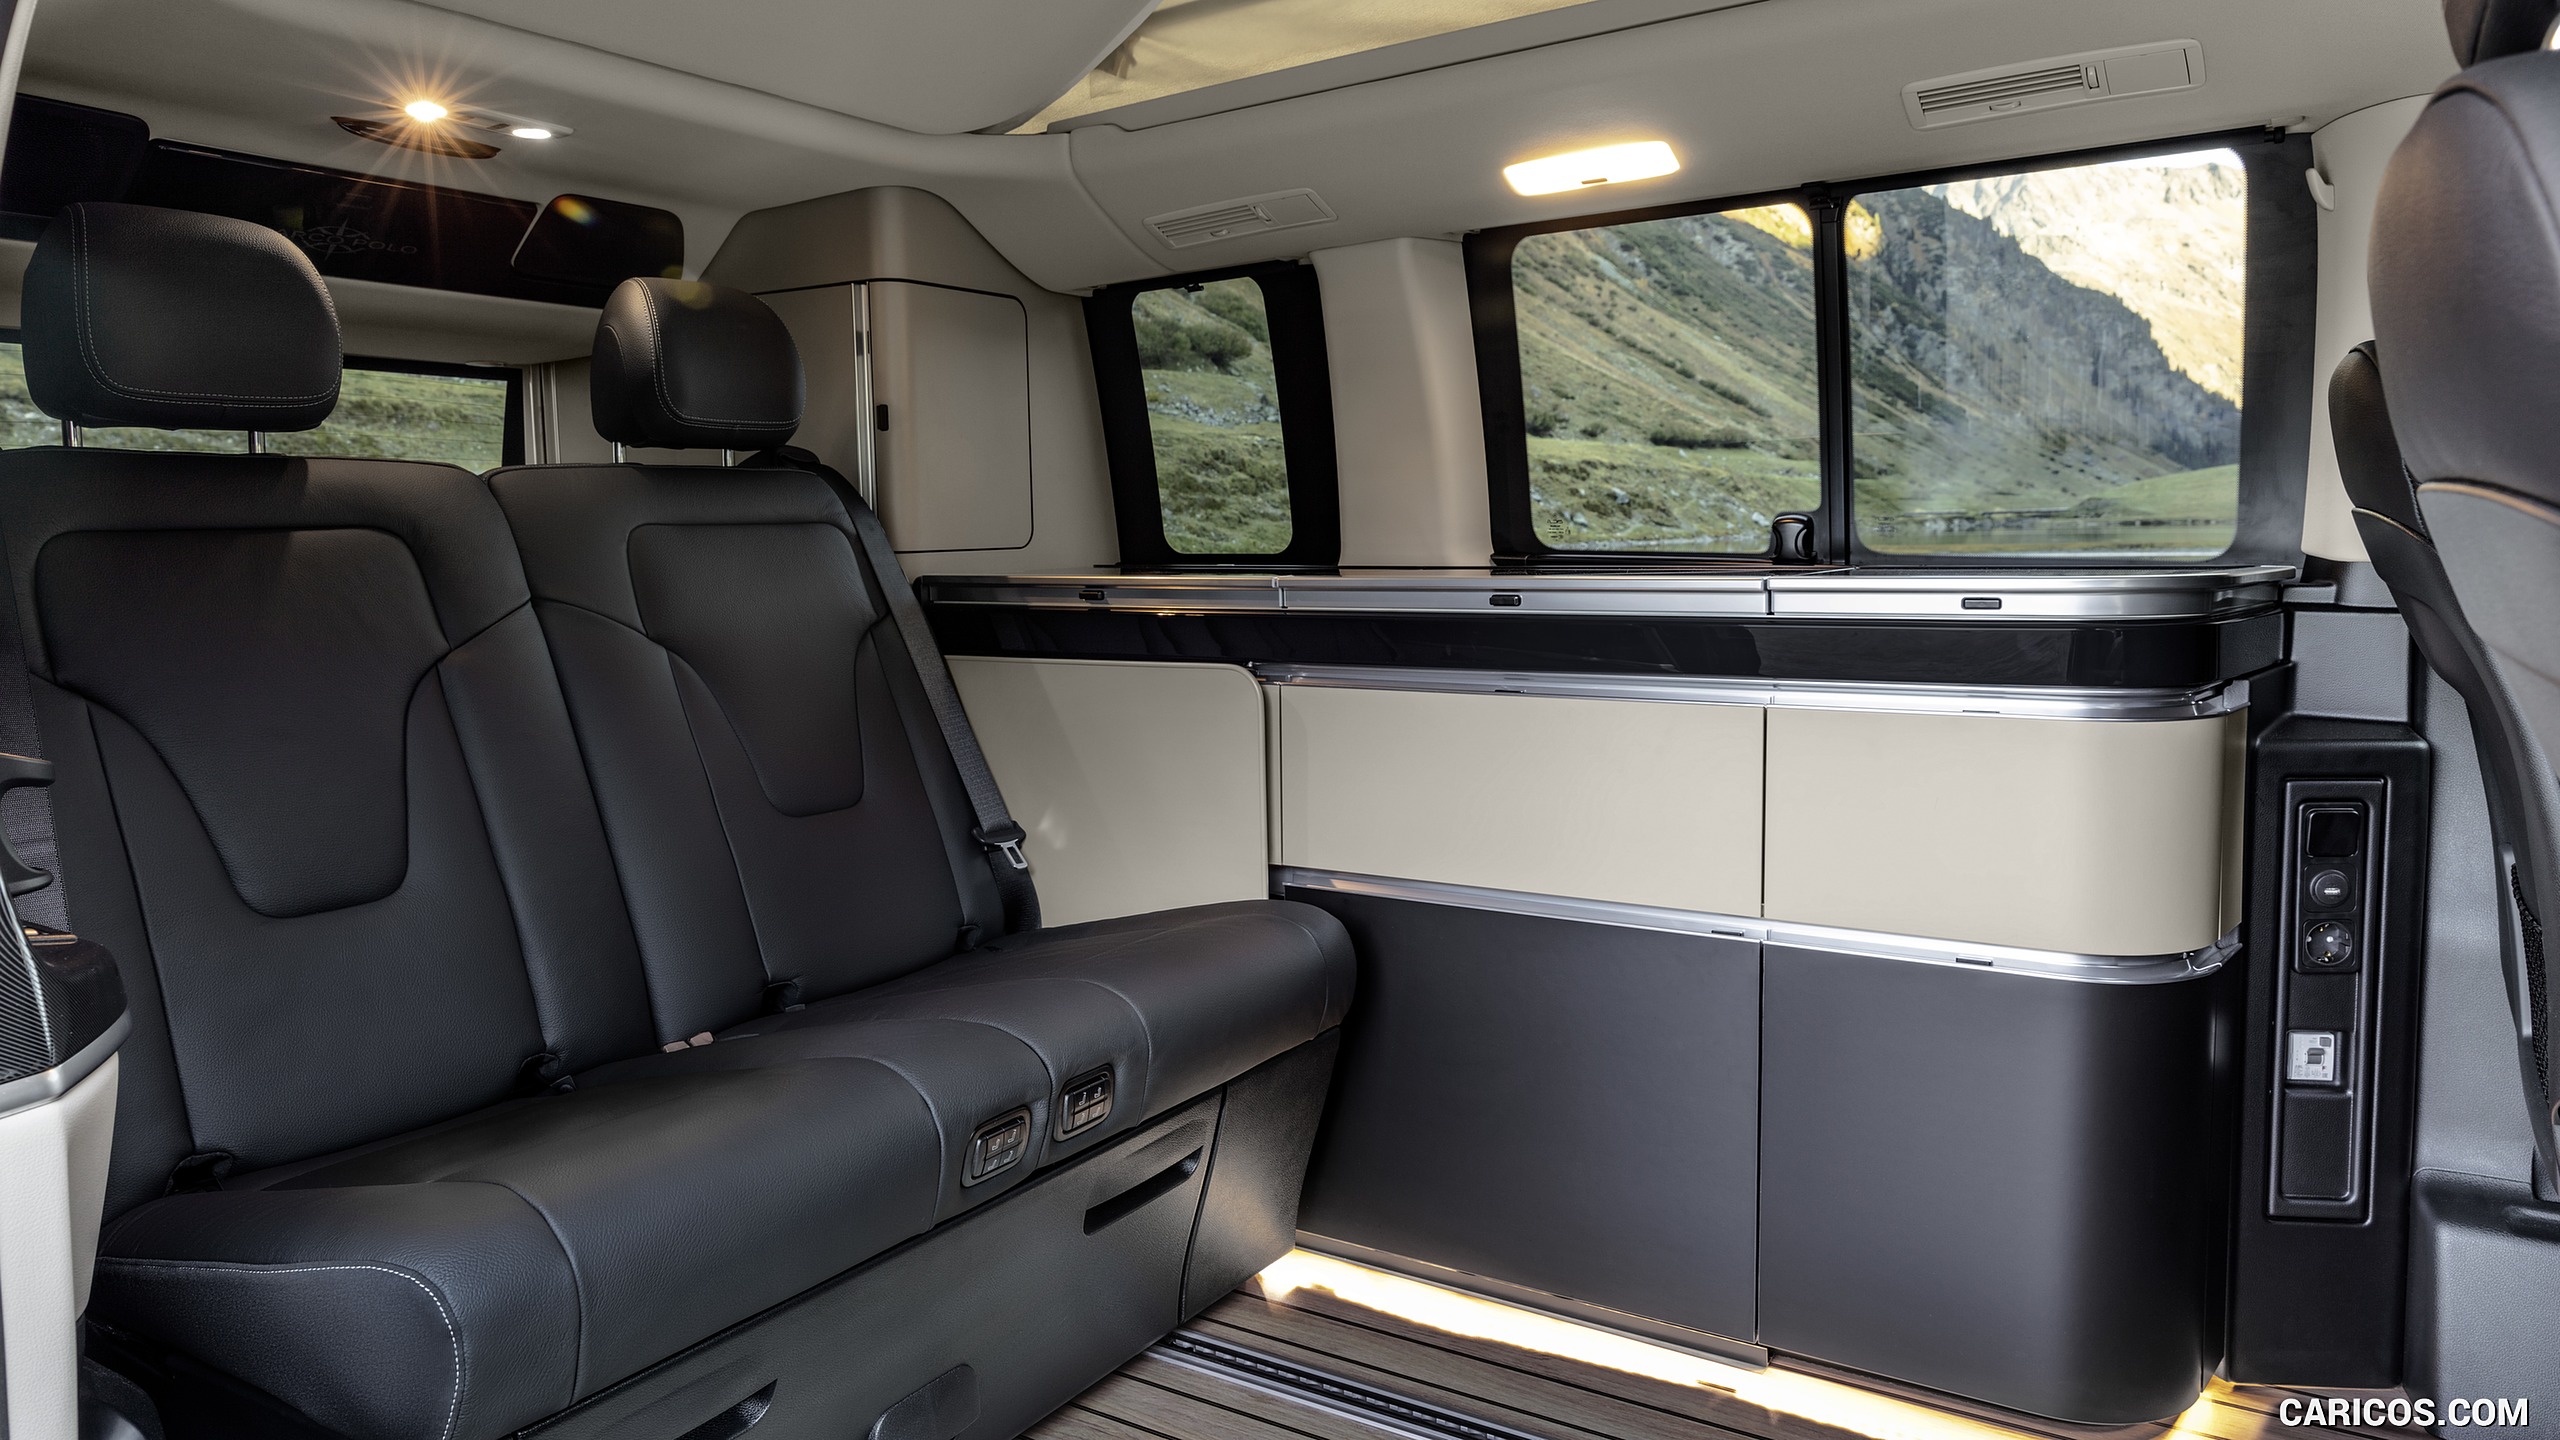 2019 Mercedes-Benz V-Class Marco Polo - Interior, Seats, #63 of 216